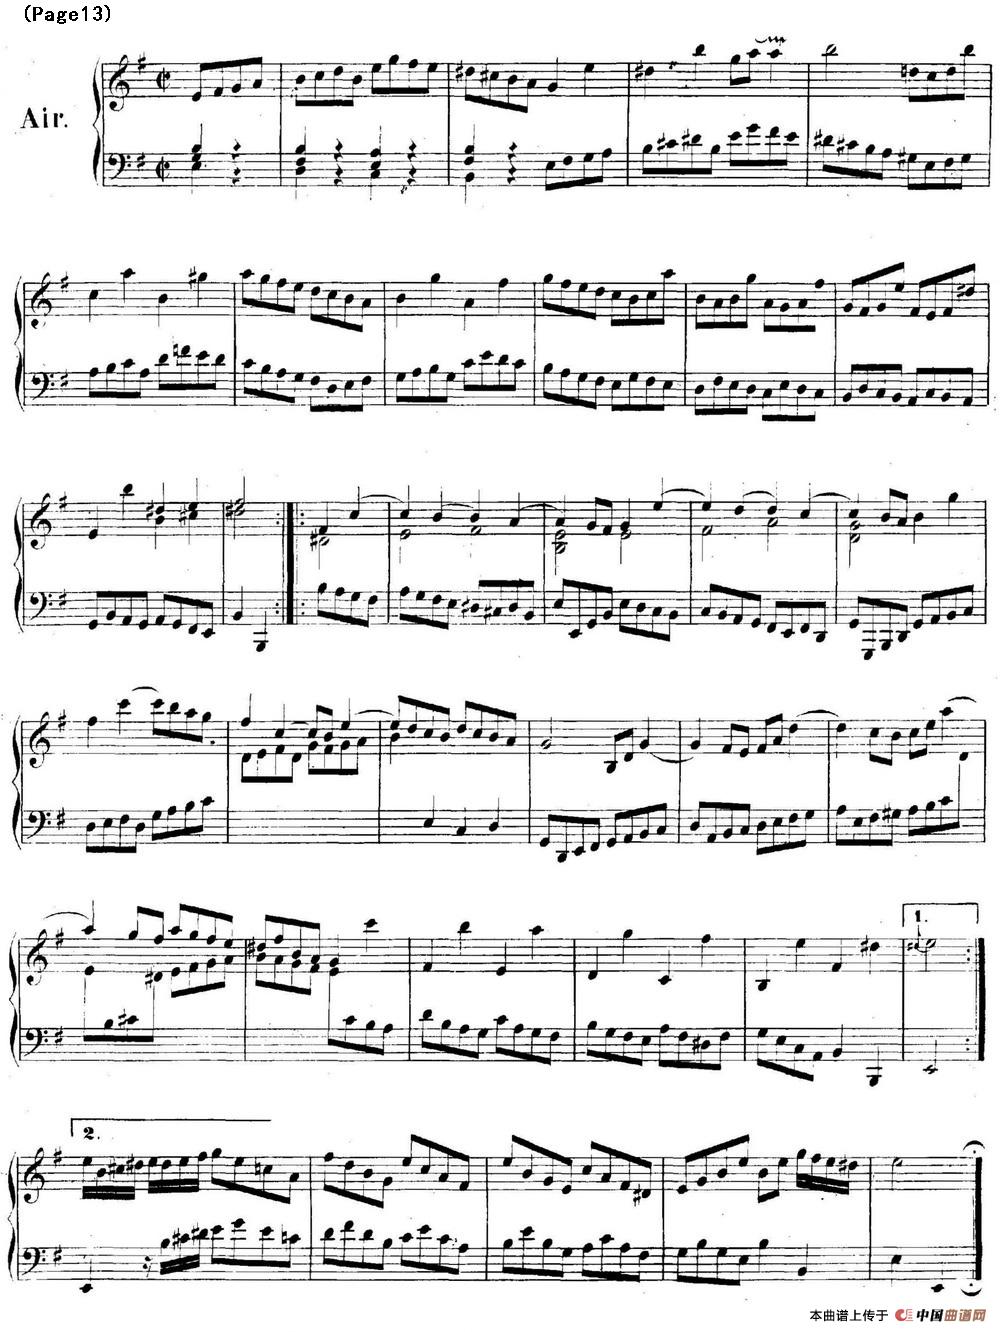 帕蒂塔6首德国组曲（No.6 e小调 巴赫 Partita e Minor BWV 830）(1)_BWV0830_页面_13.jpg